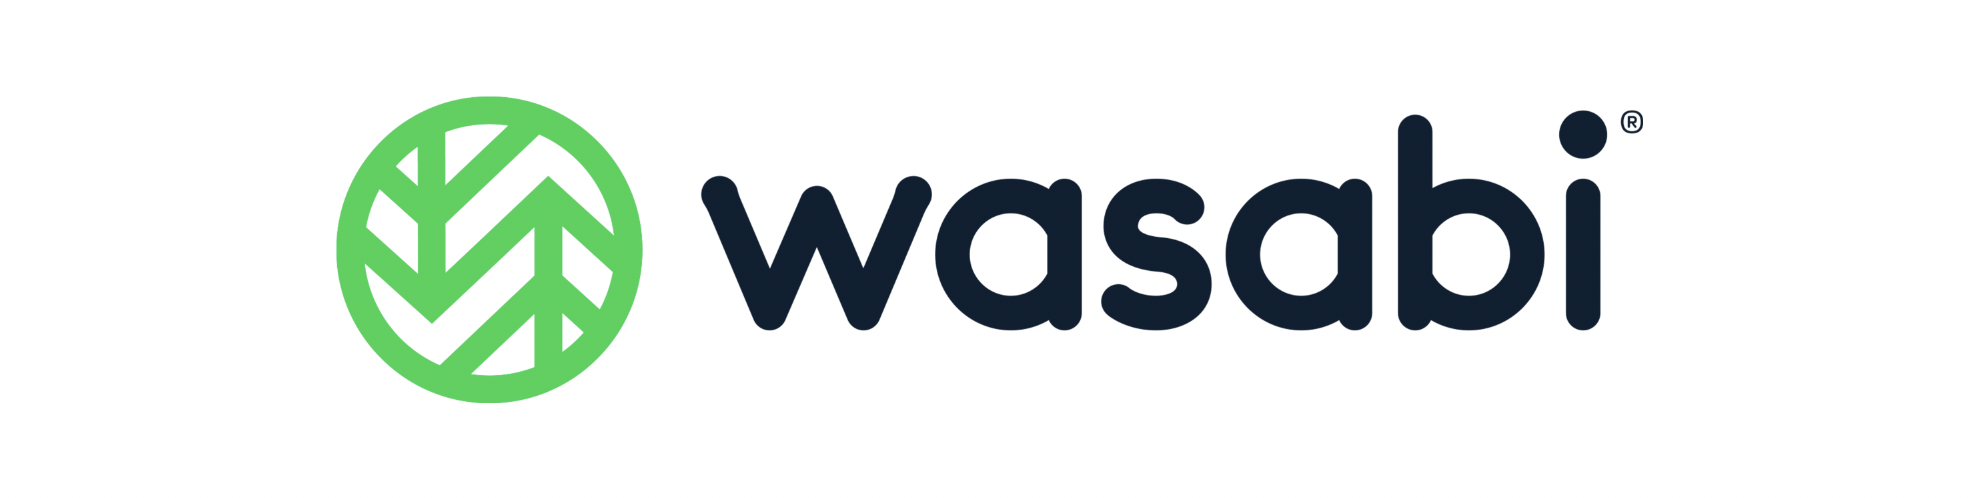 Wasabi Technologies Company Logo